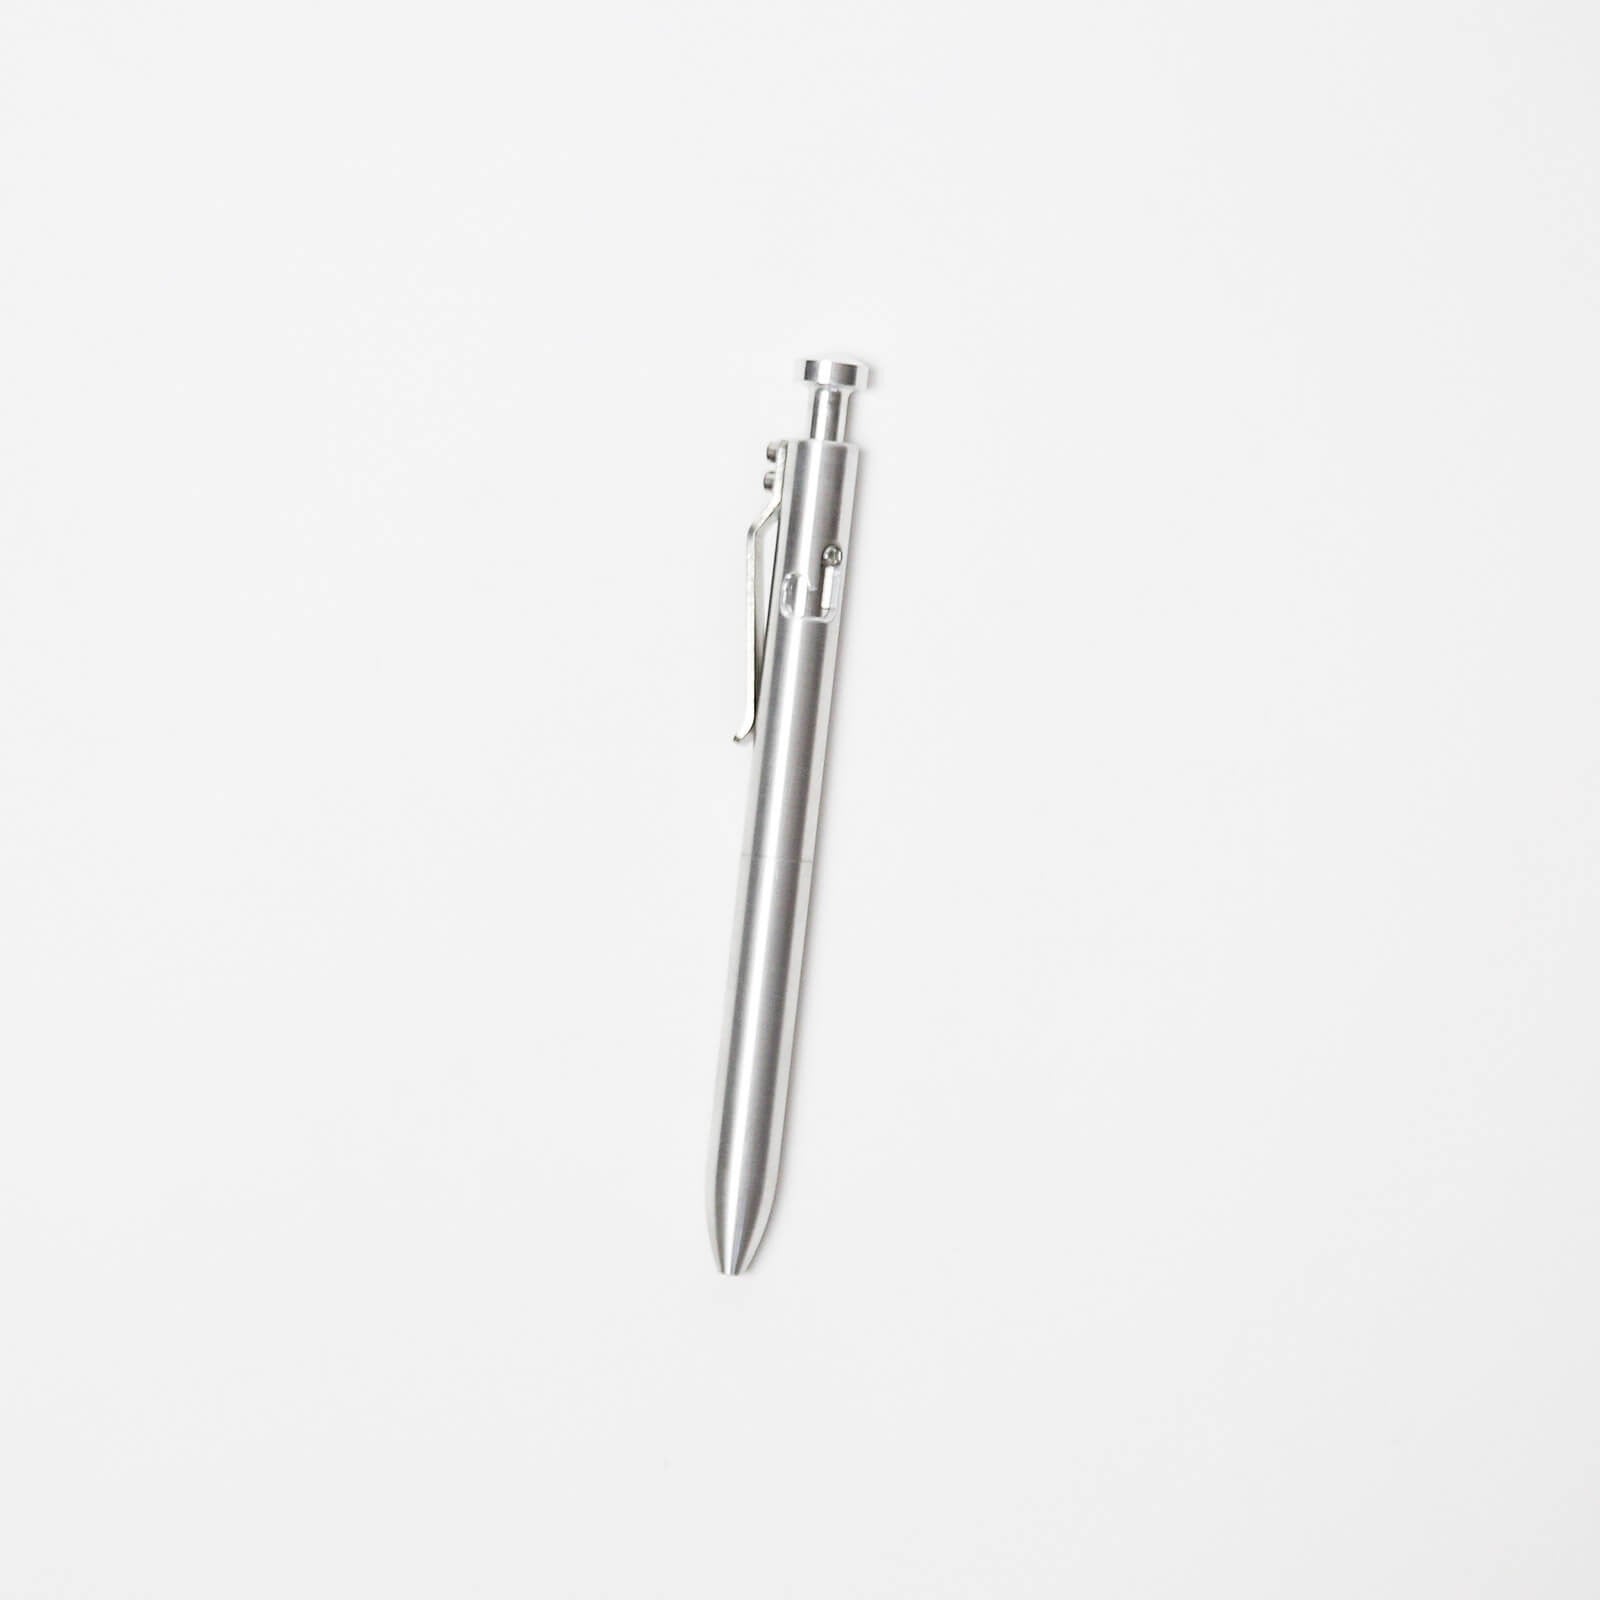 The Bolt Pen - Aluminum